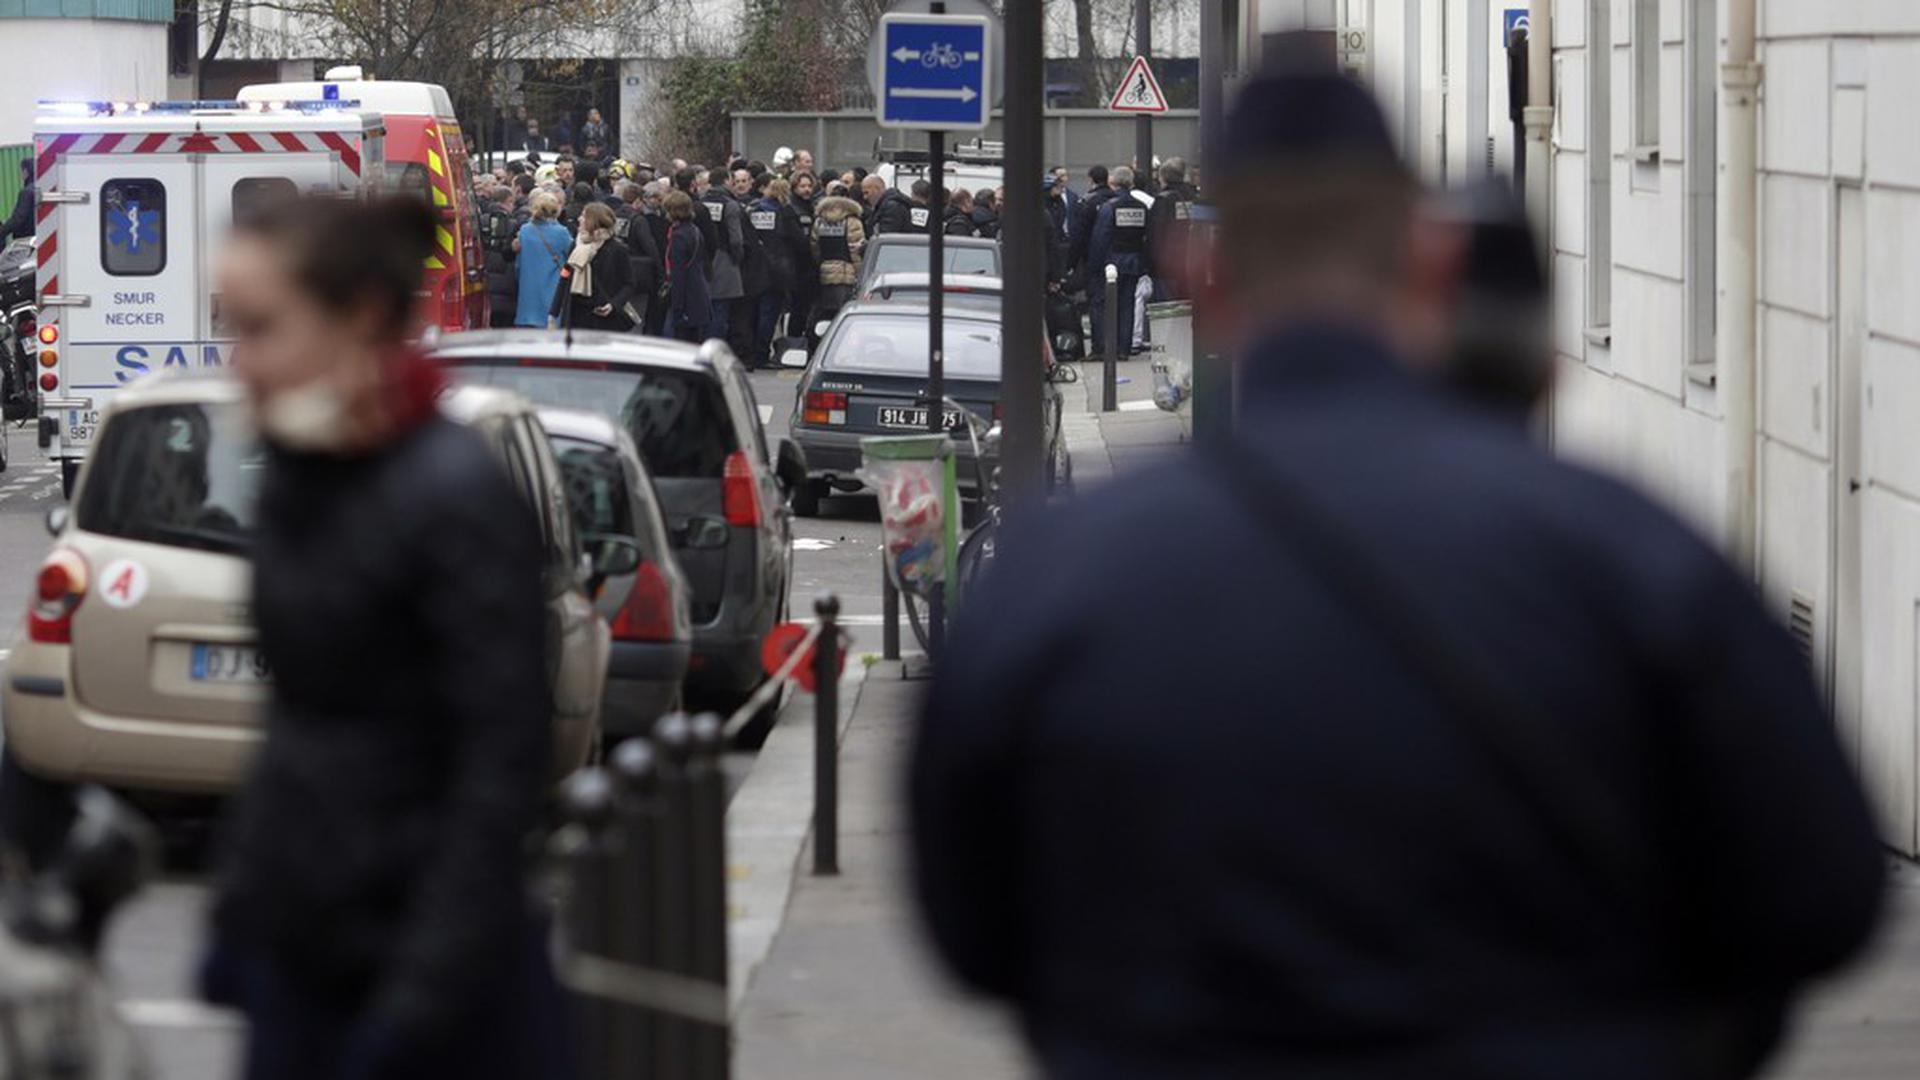 Le 7 janvier 2015, la rédaction de Charlie Hebdo était frappée par le terrorisme: 12 personnes ont perdu la vie